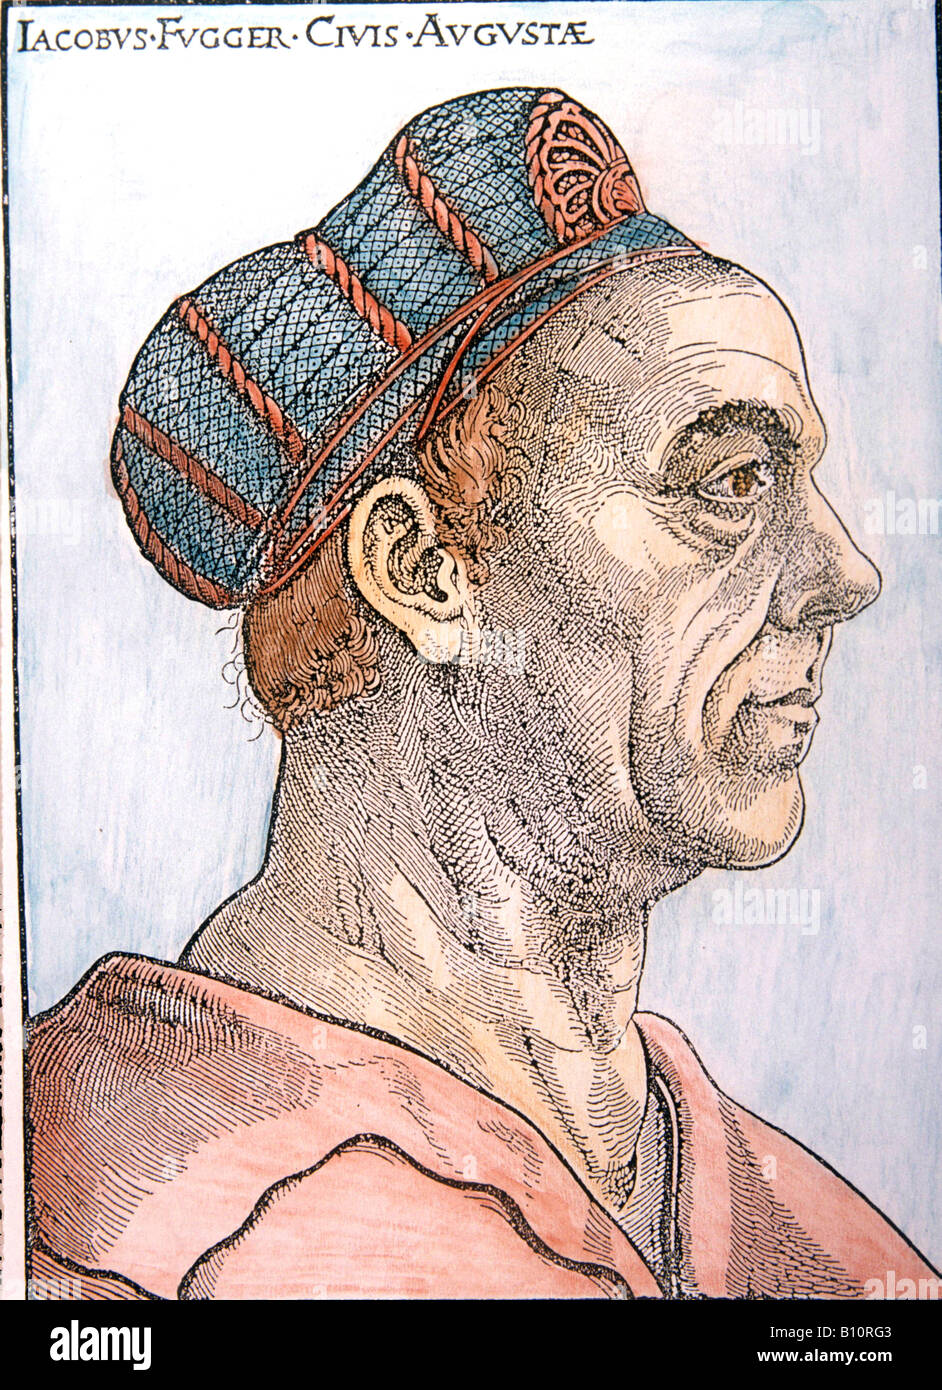 Profil de Jacob Fugger.marchand par Hans Burgkmair, Augsbourg. 16e siècle Banque D'Images